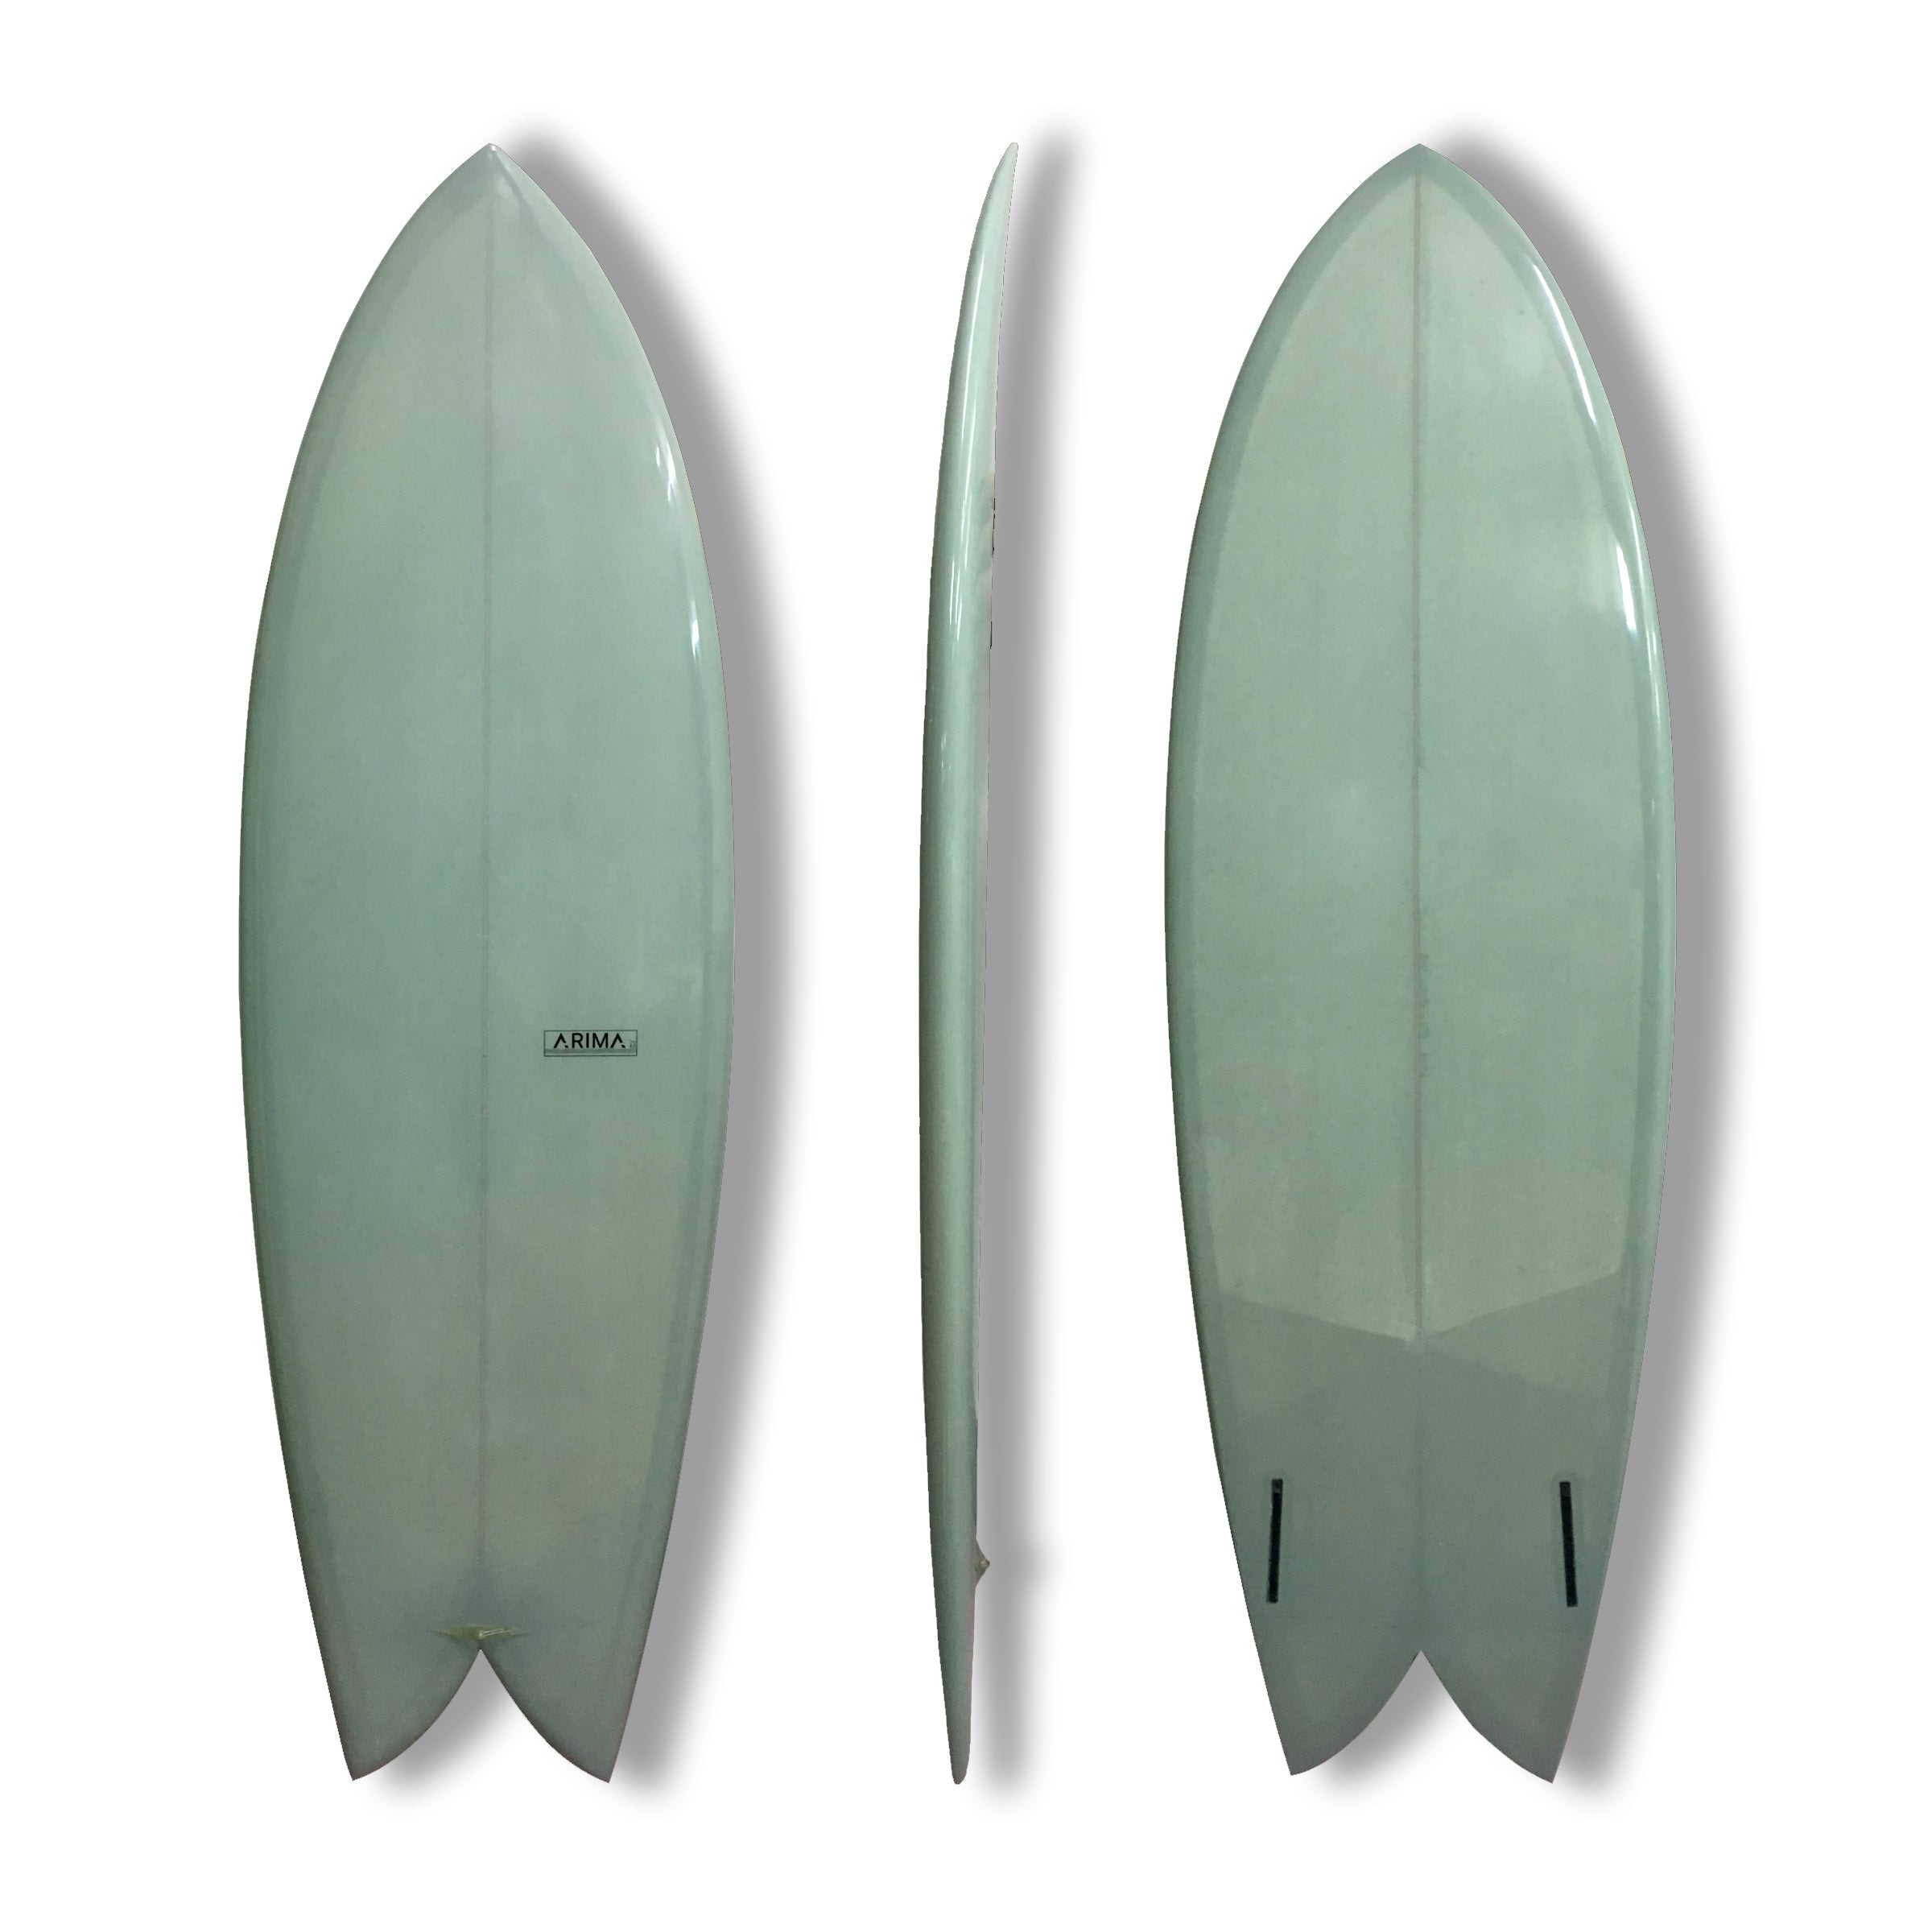 Arima Tin's Fish PU Surfboard